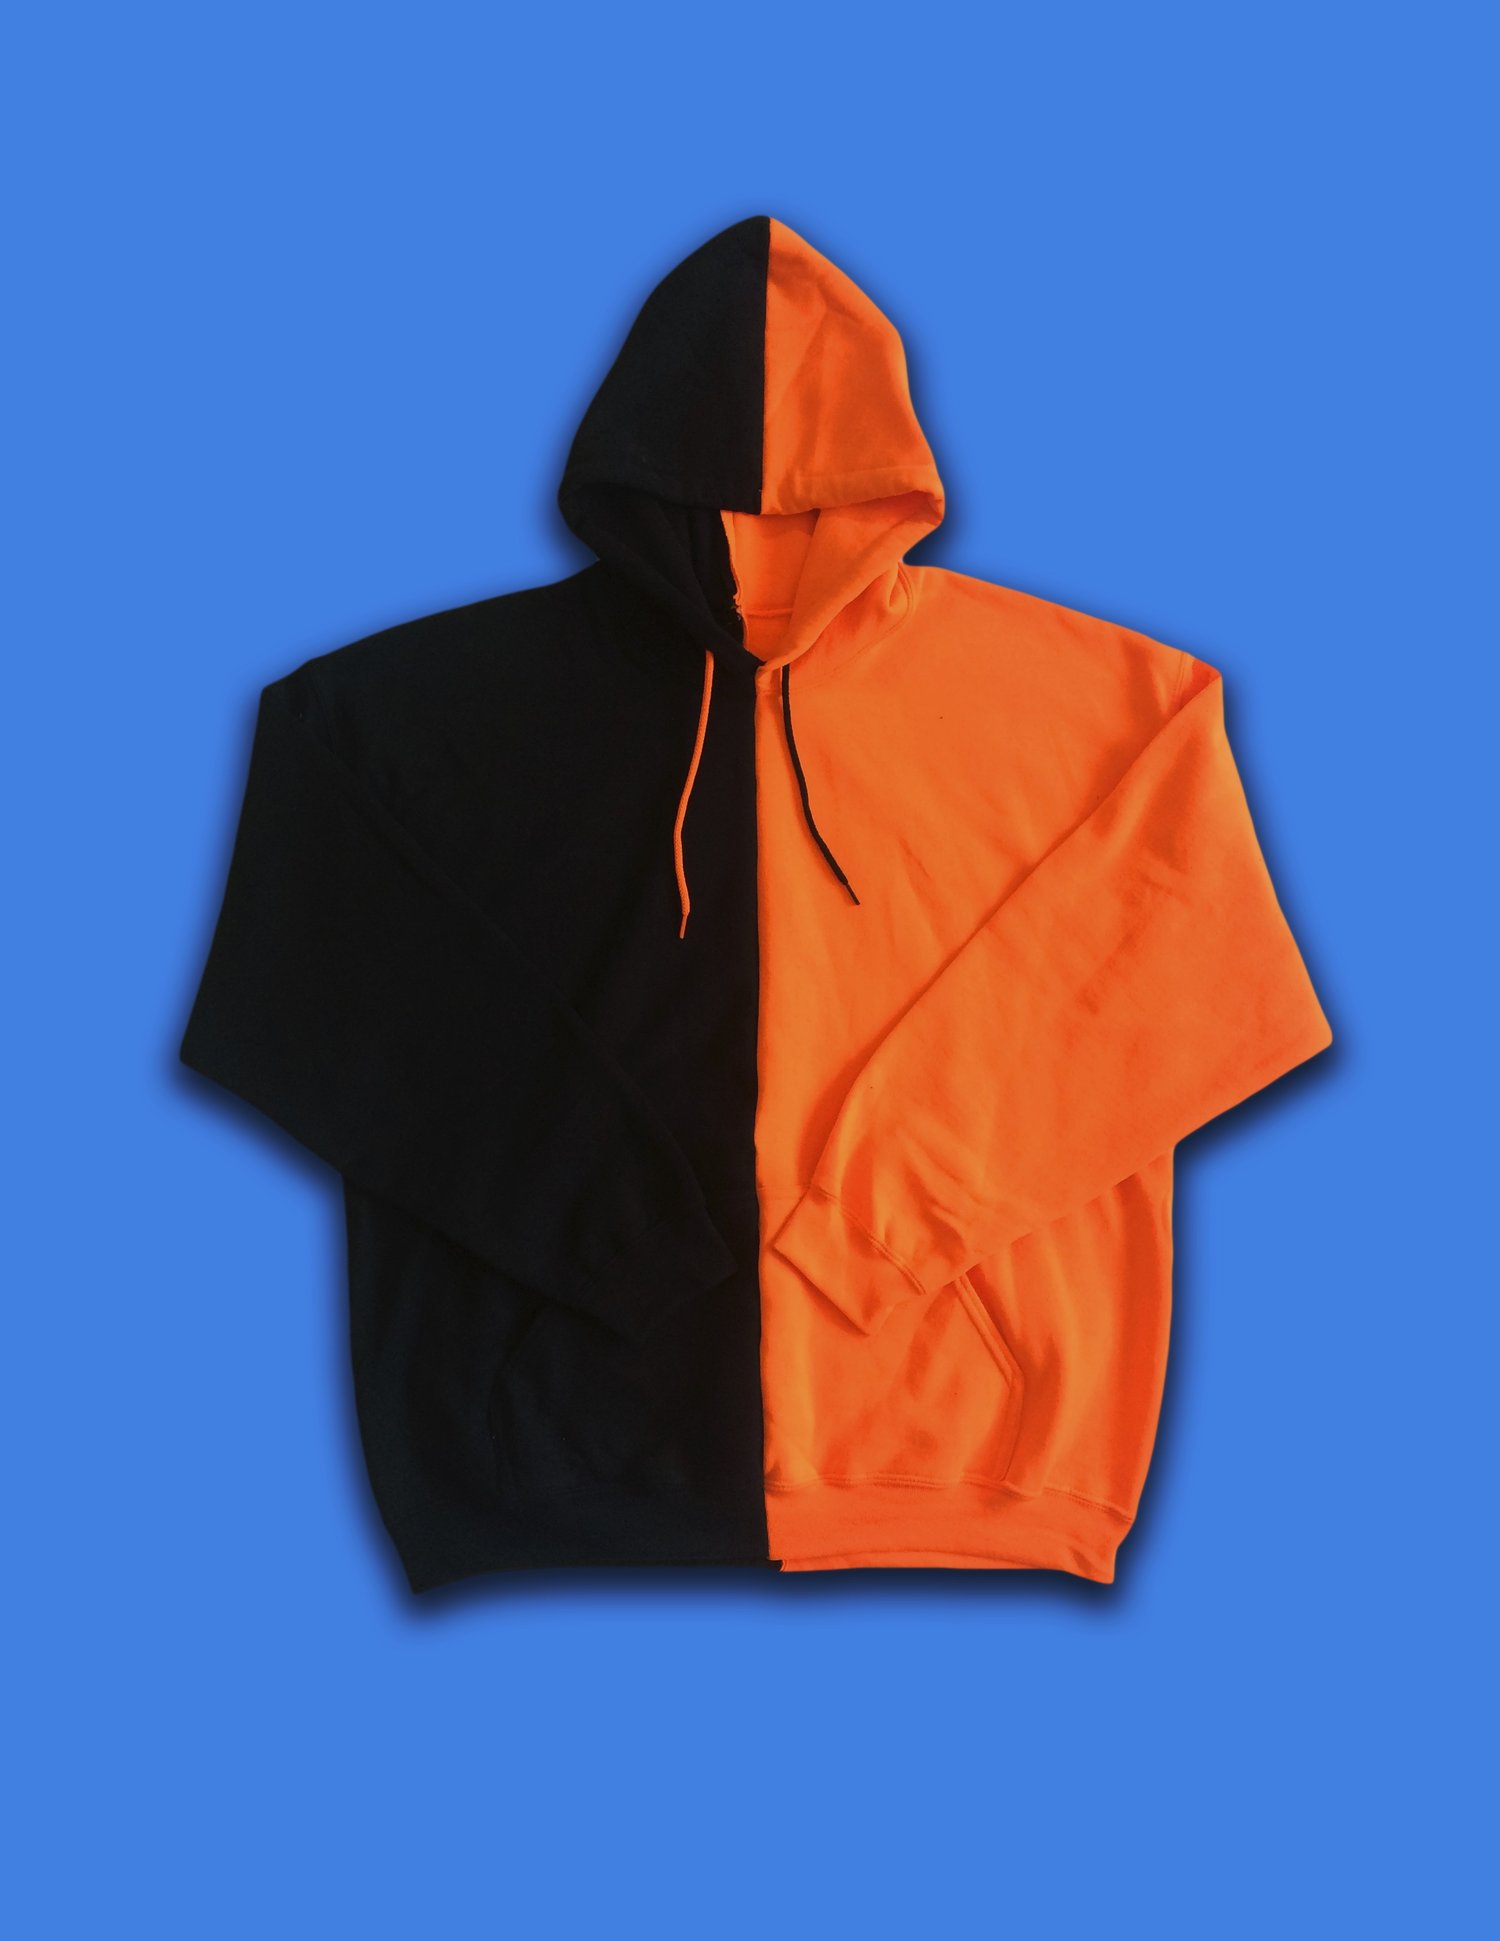 Orange/Black Split Color Zip Up Hoodie – VIVACI